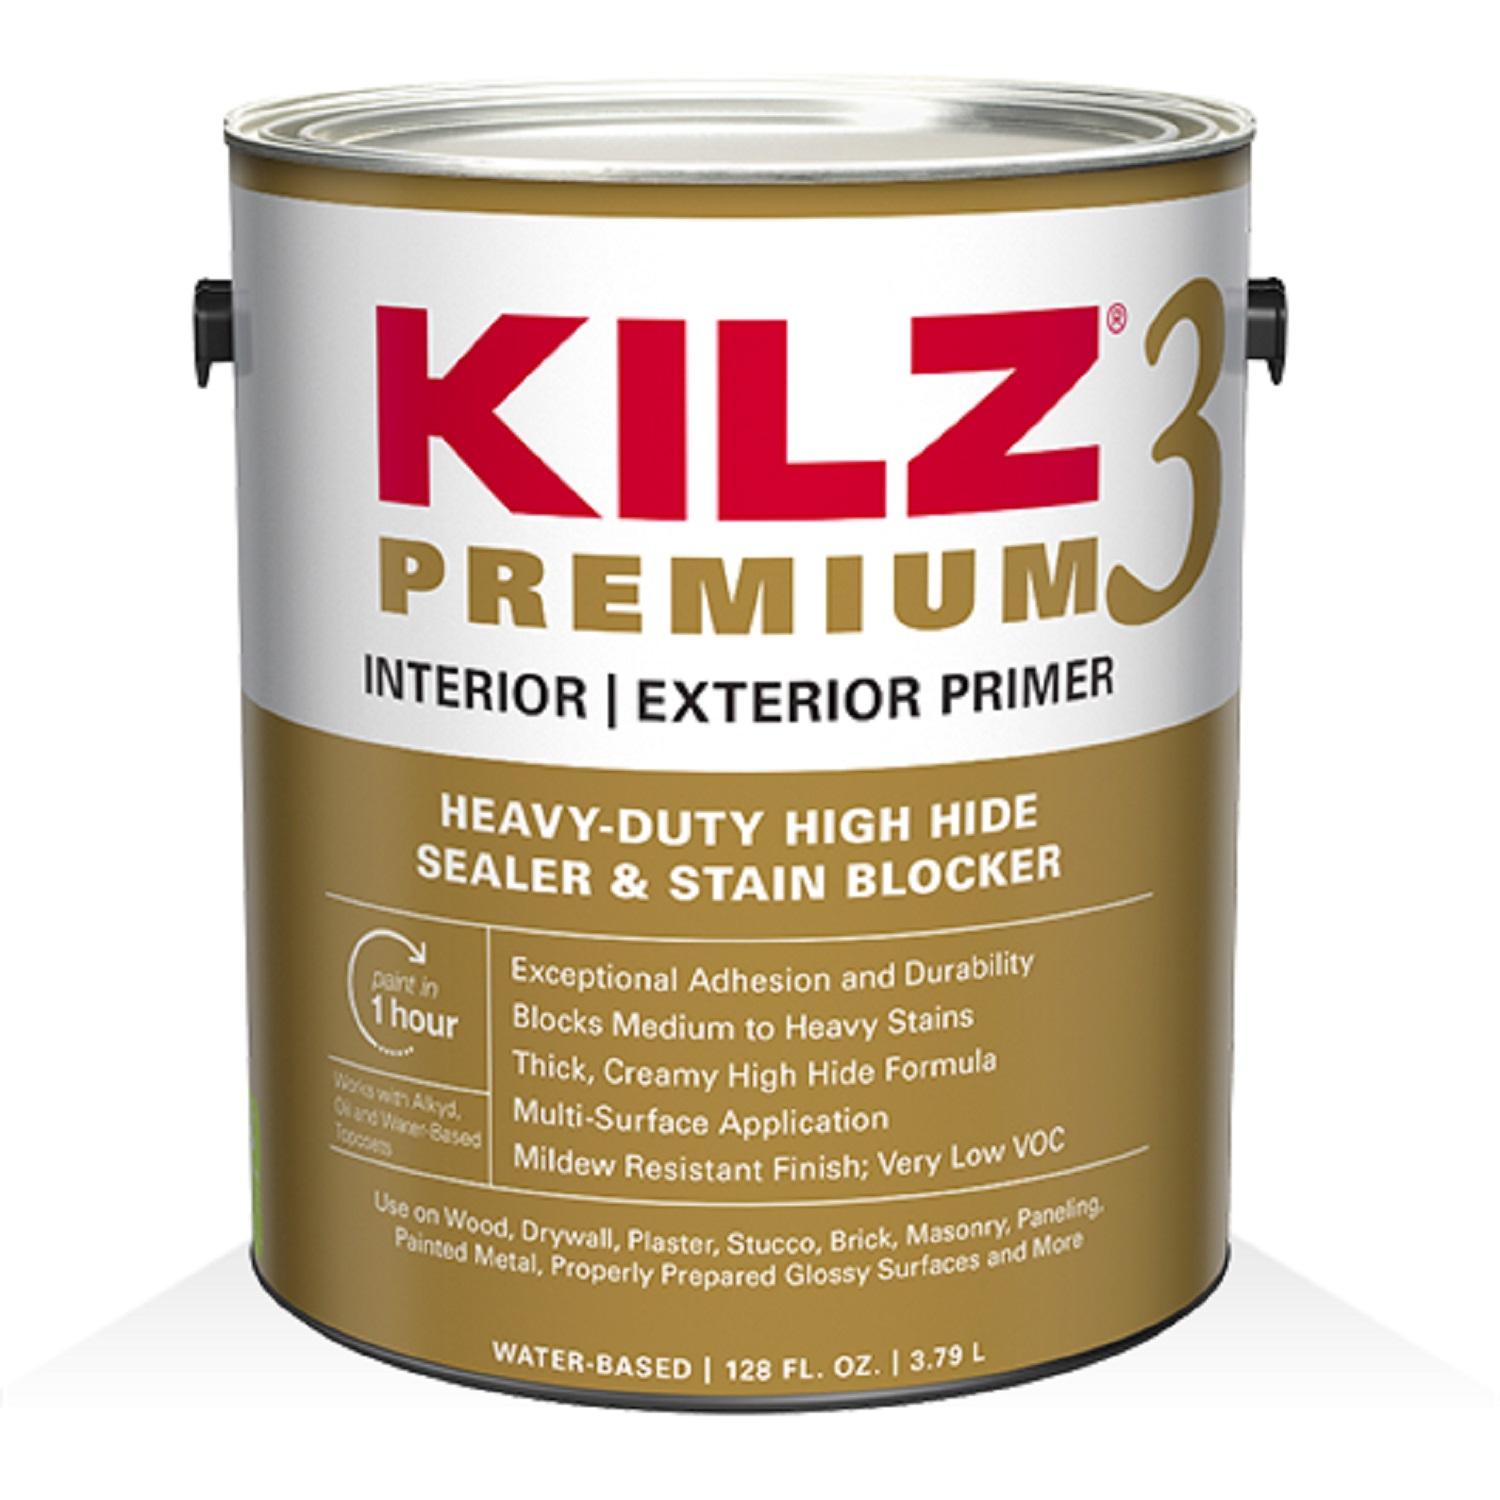 KILZ Premium High-Hide Stain Blocking Interior/Exterior Latex Primer/Sealer